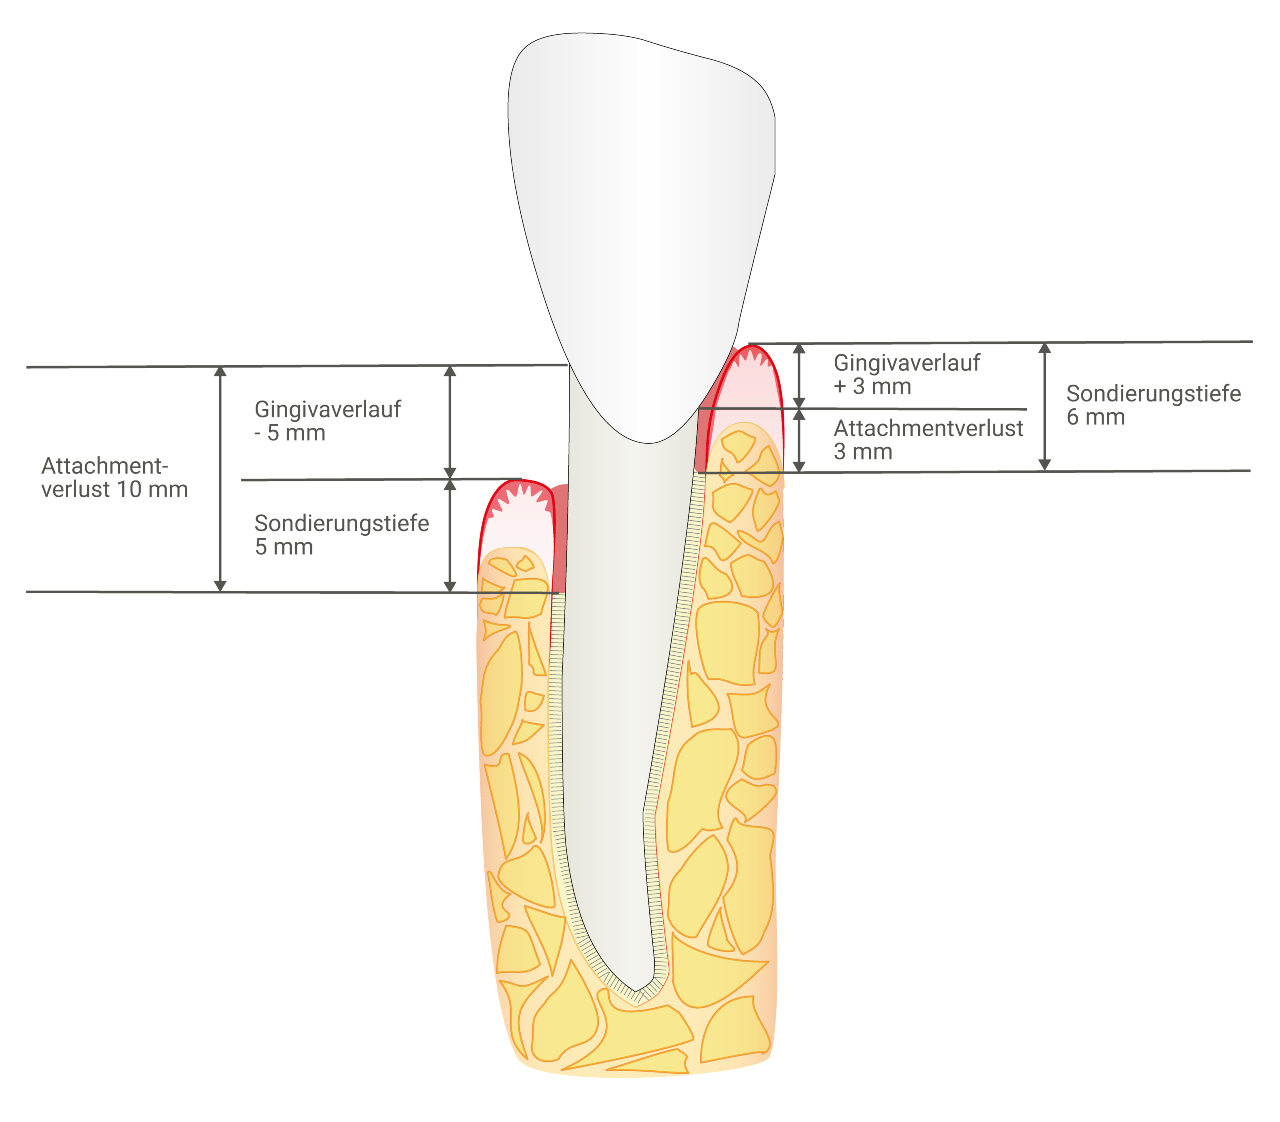 Um ein möglichst vollständiges Bild der parodontalen Situation zu erhalten, sollte immer an sechs Stellen pro Zahn gemessen werden. 